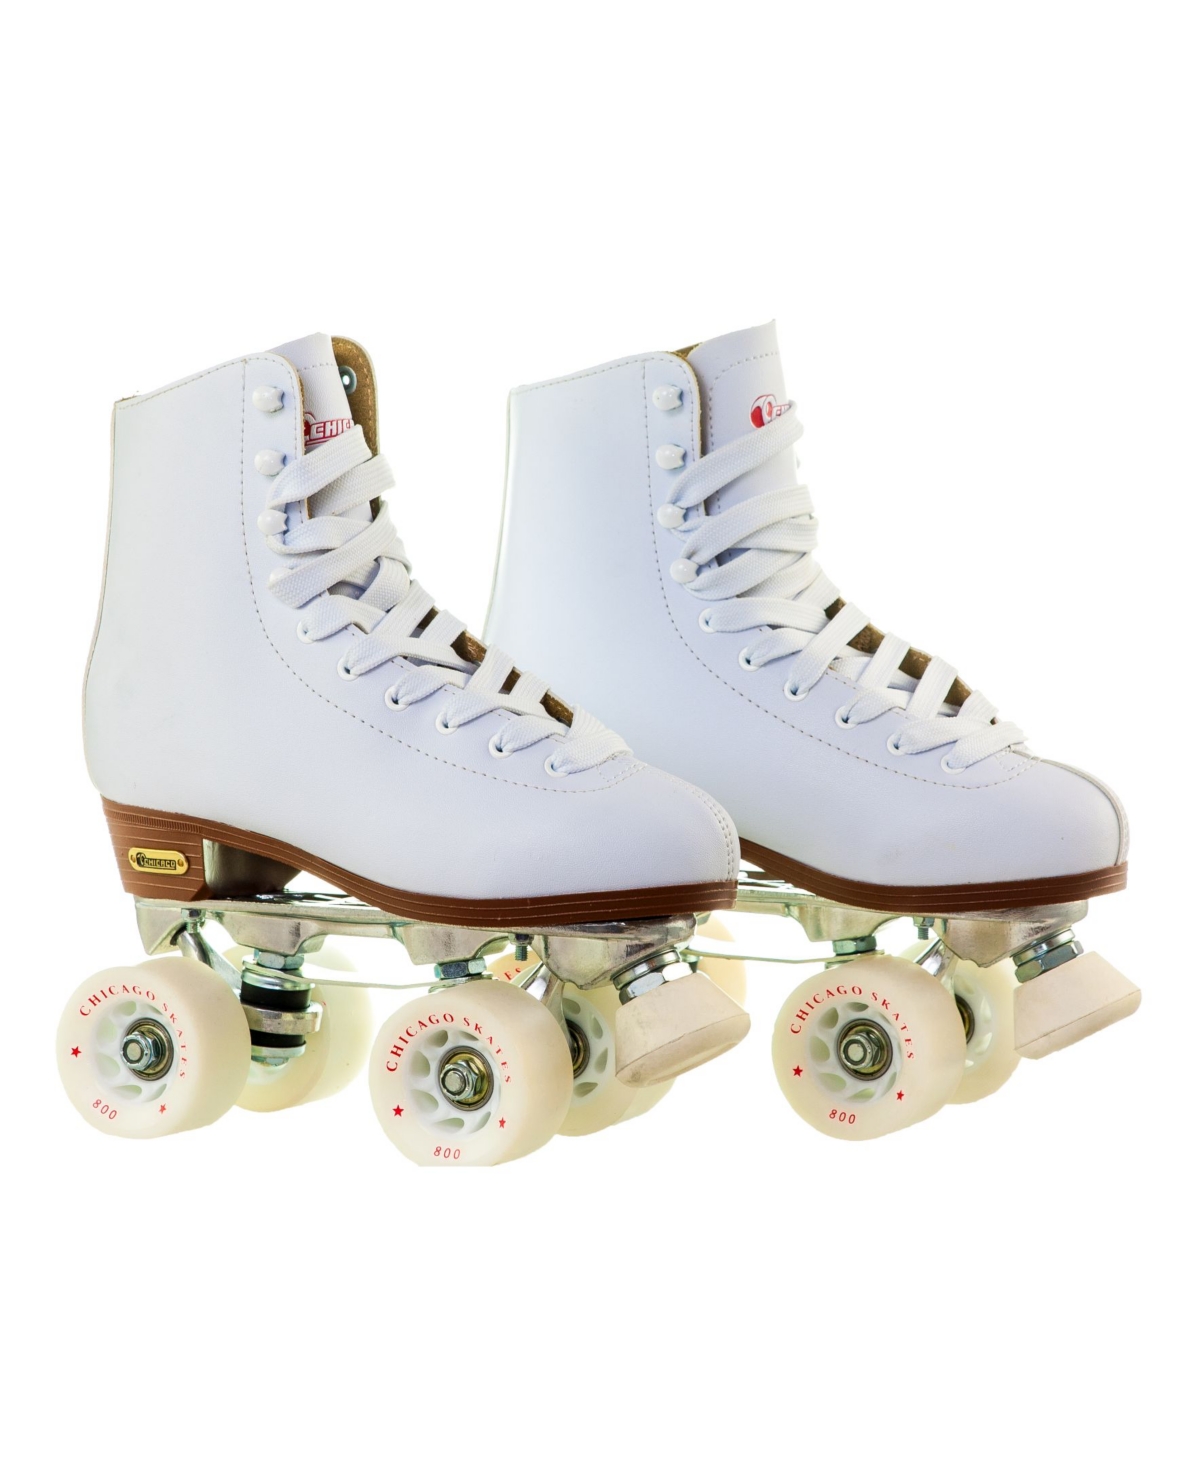 Women's Deluxe Quad Roller Rink Skates - Size 7 - White